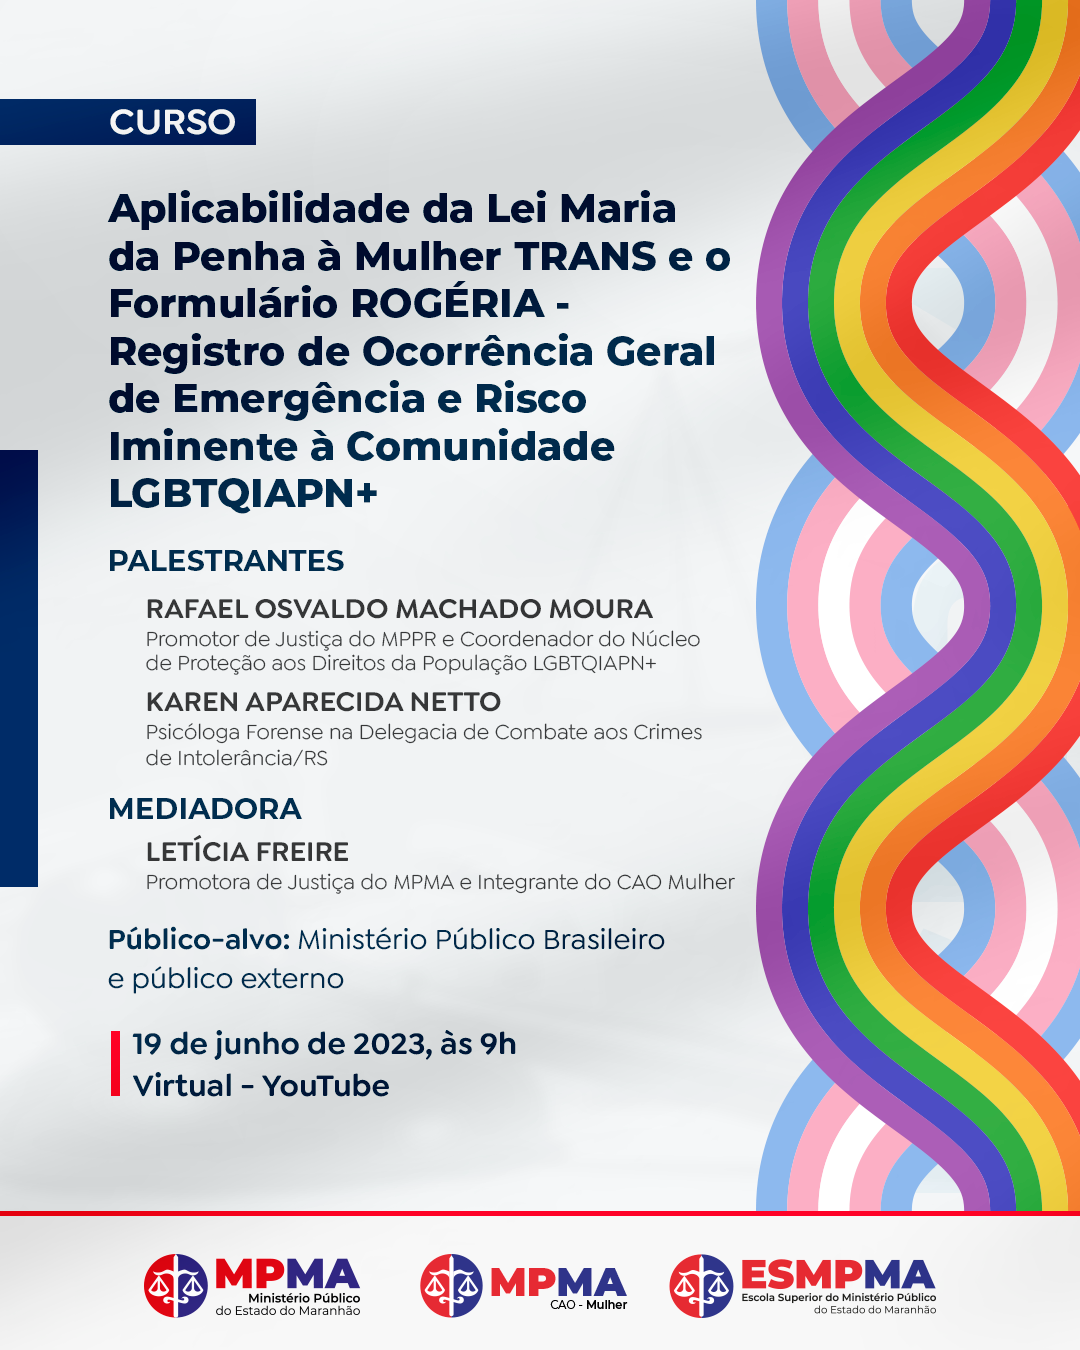 Curso "Aplicabilidade da Lei Maria da Penha à Mulher TRANS e o Formulário ROGÉRIA - Registro de Ocorrência Geral de Emergência e Risco Iminente à Comunidade LGBTQIAPN+